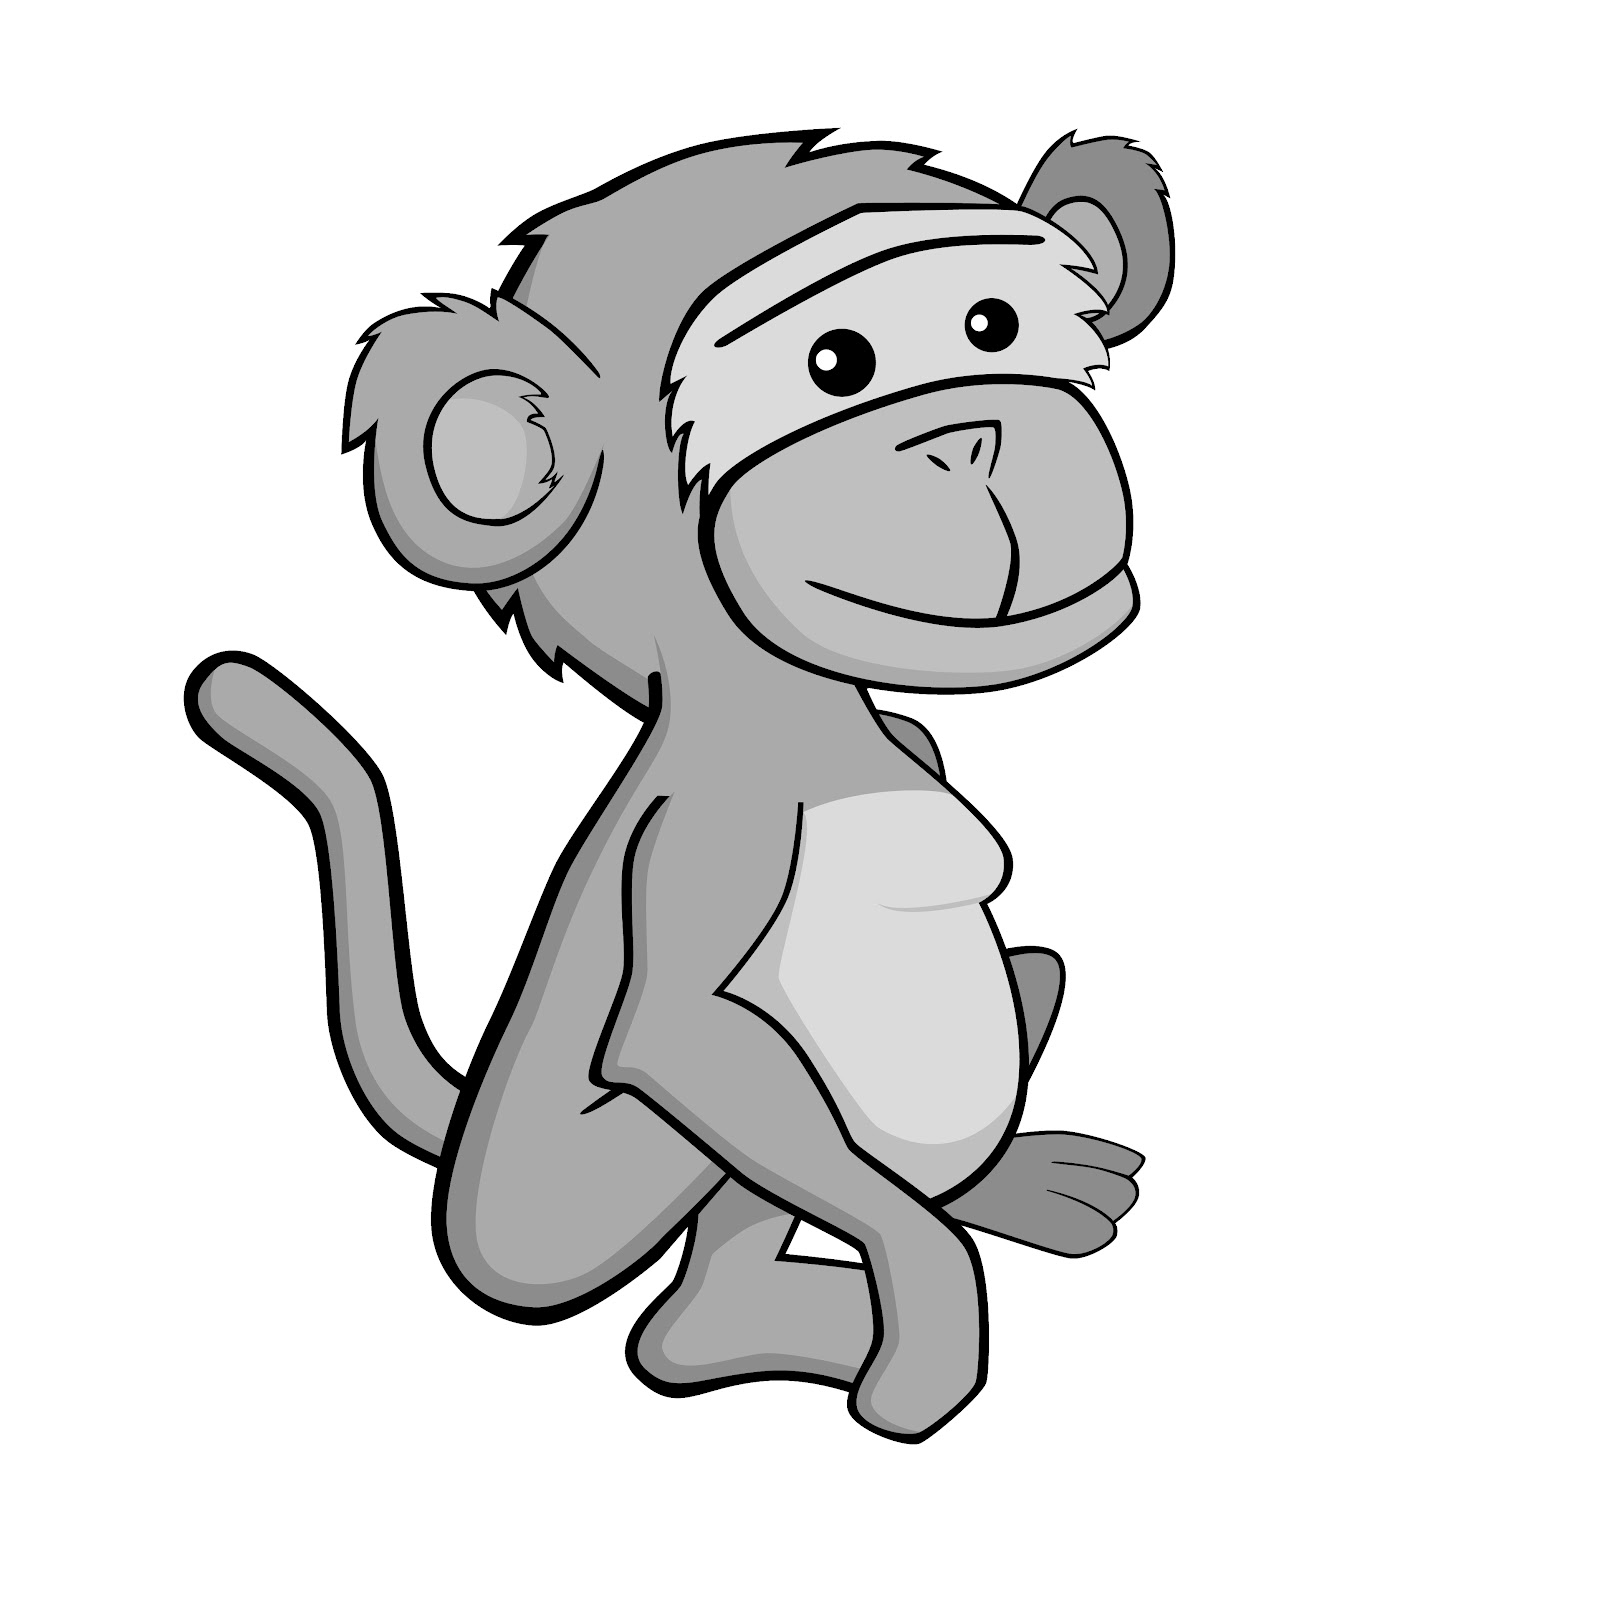 monkeys clipart grey